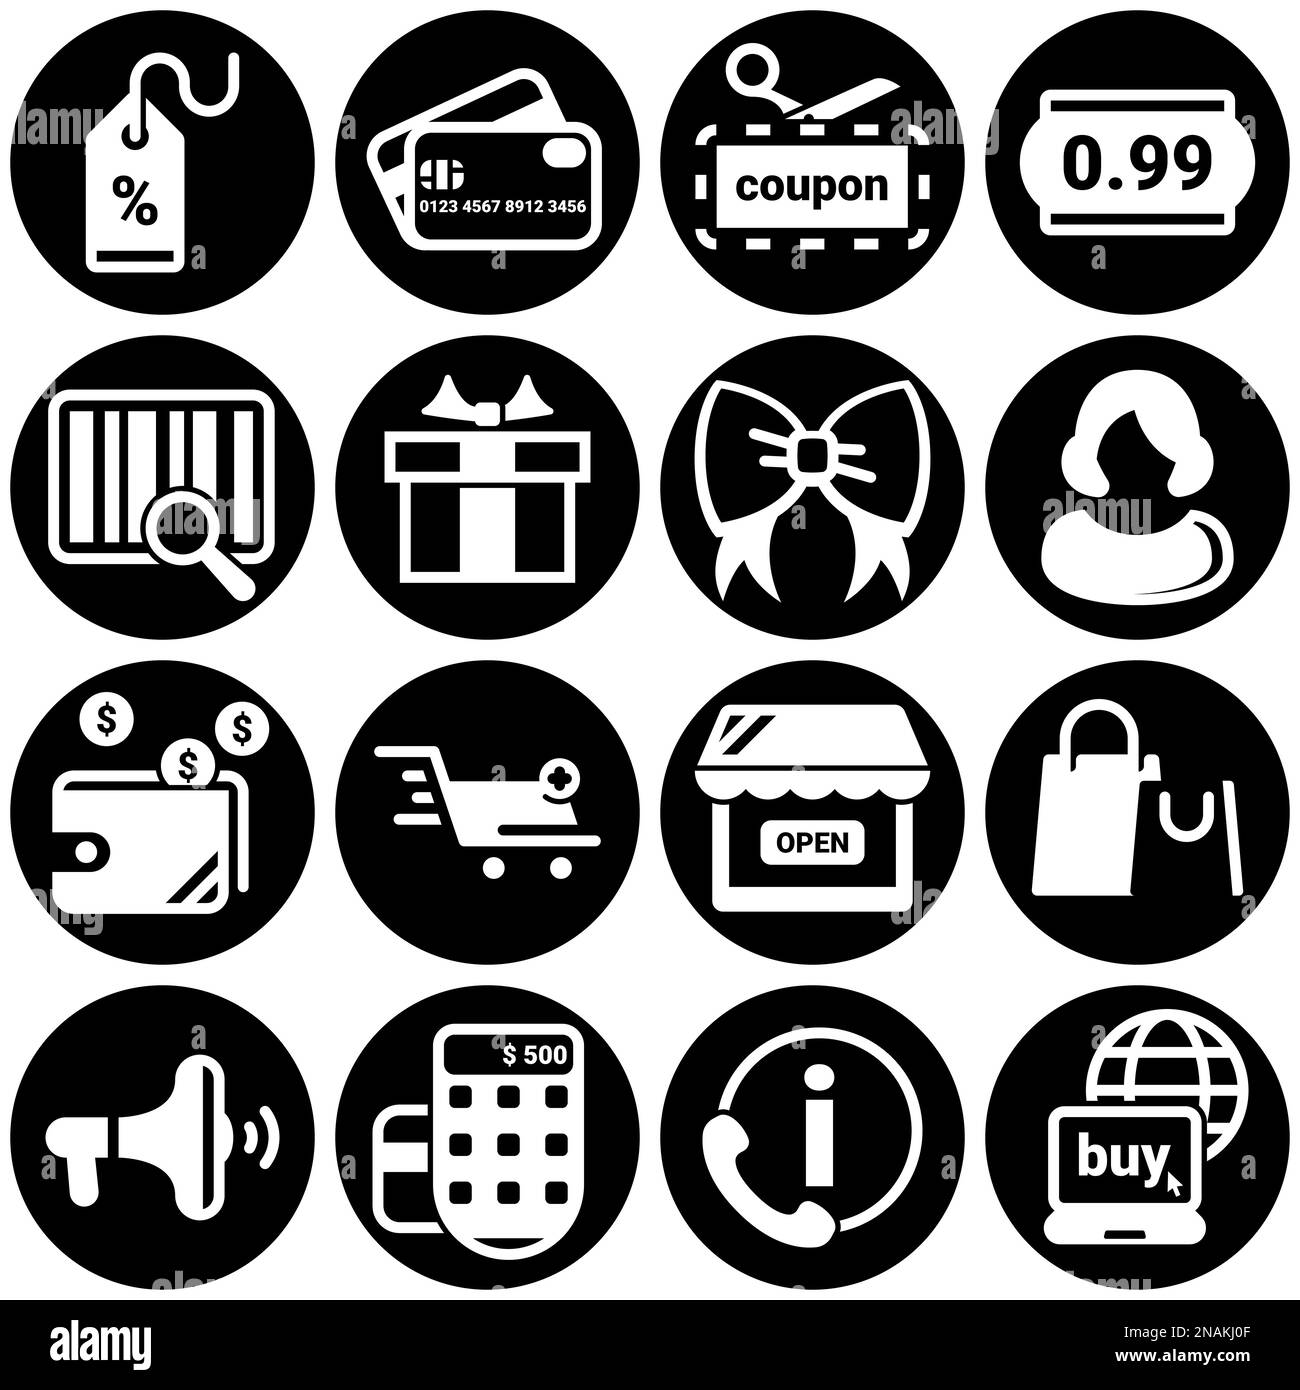 Ensemble d'icônes simples sur un thème Shopping, commerce, e-commerce, argent, achat, vente, crédit, boutique, Internet , vecteur, ensemble, plat, signe, symbole, objet. Illustration de Vecteur